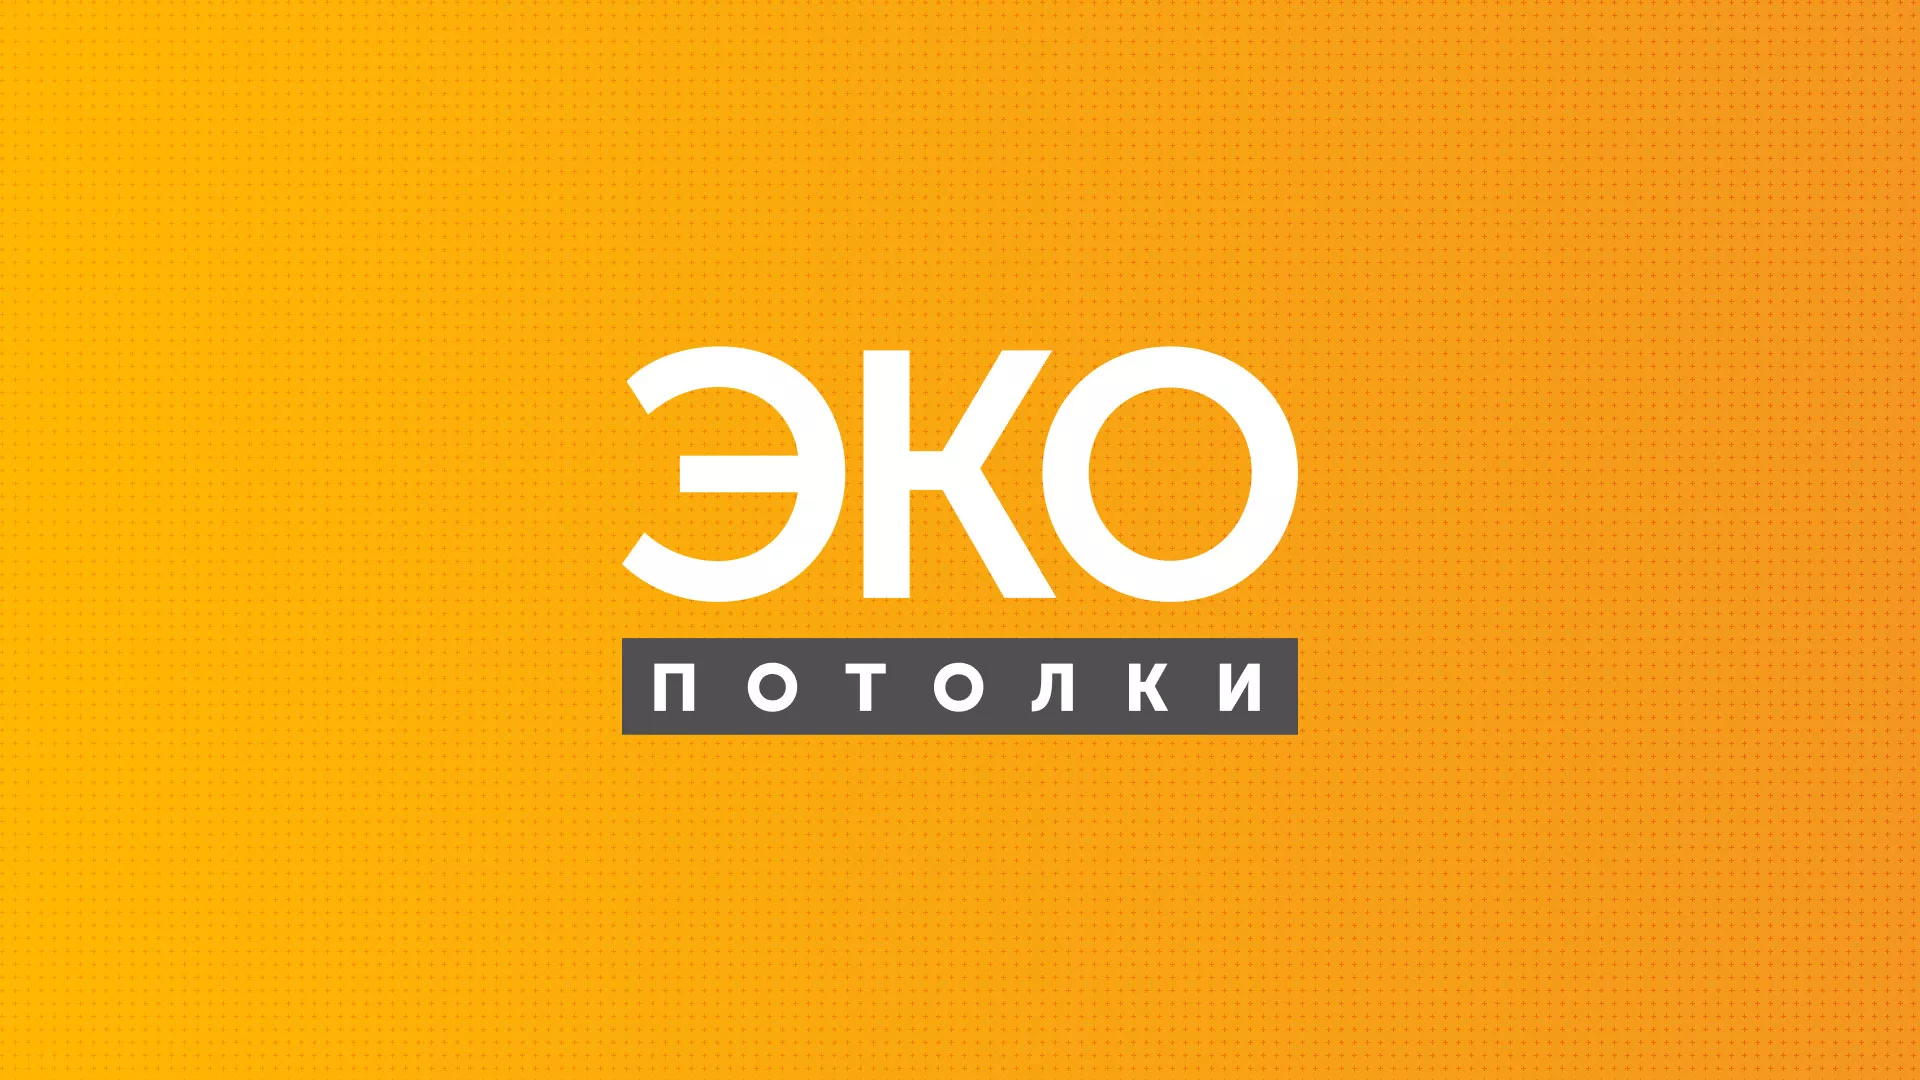 Разработка сайта по натяжным потолкам «Эко Потолки» в Дятьково